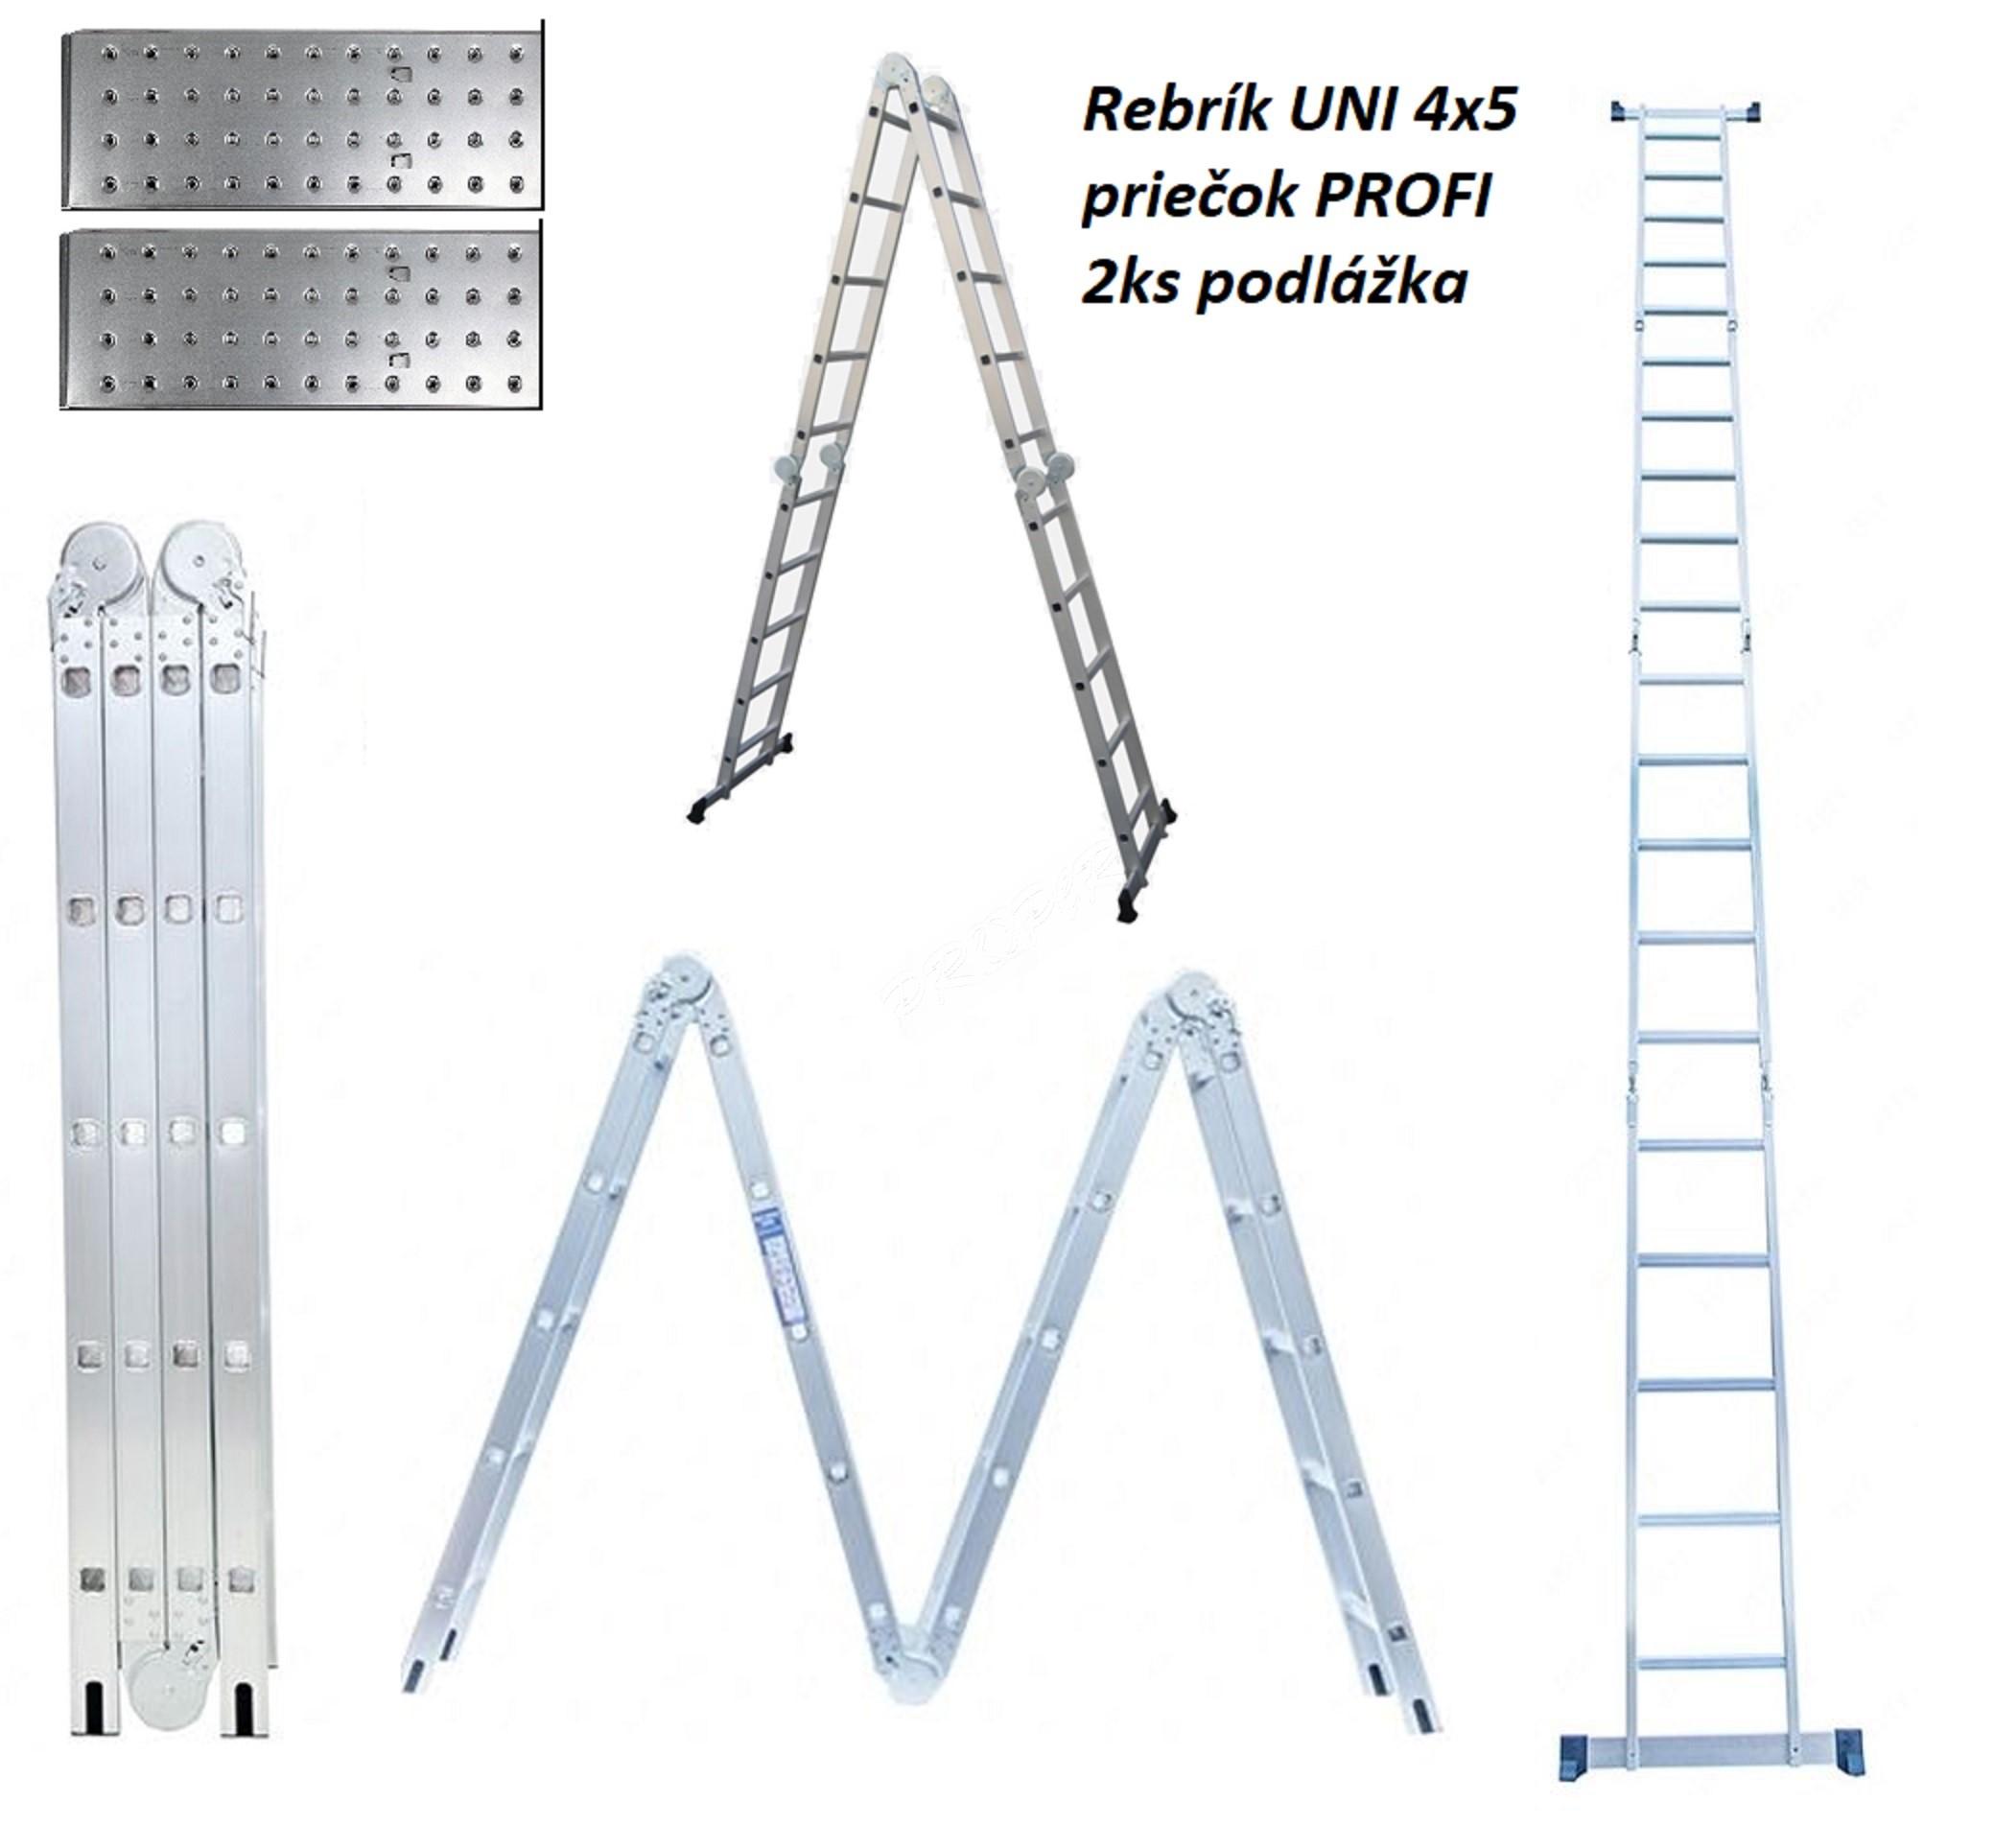 PROPER rebrík kĺbový viacúčelový 4x5 s podlážkou NOVINKA dopravné 9,90€